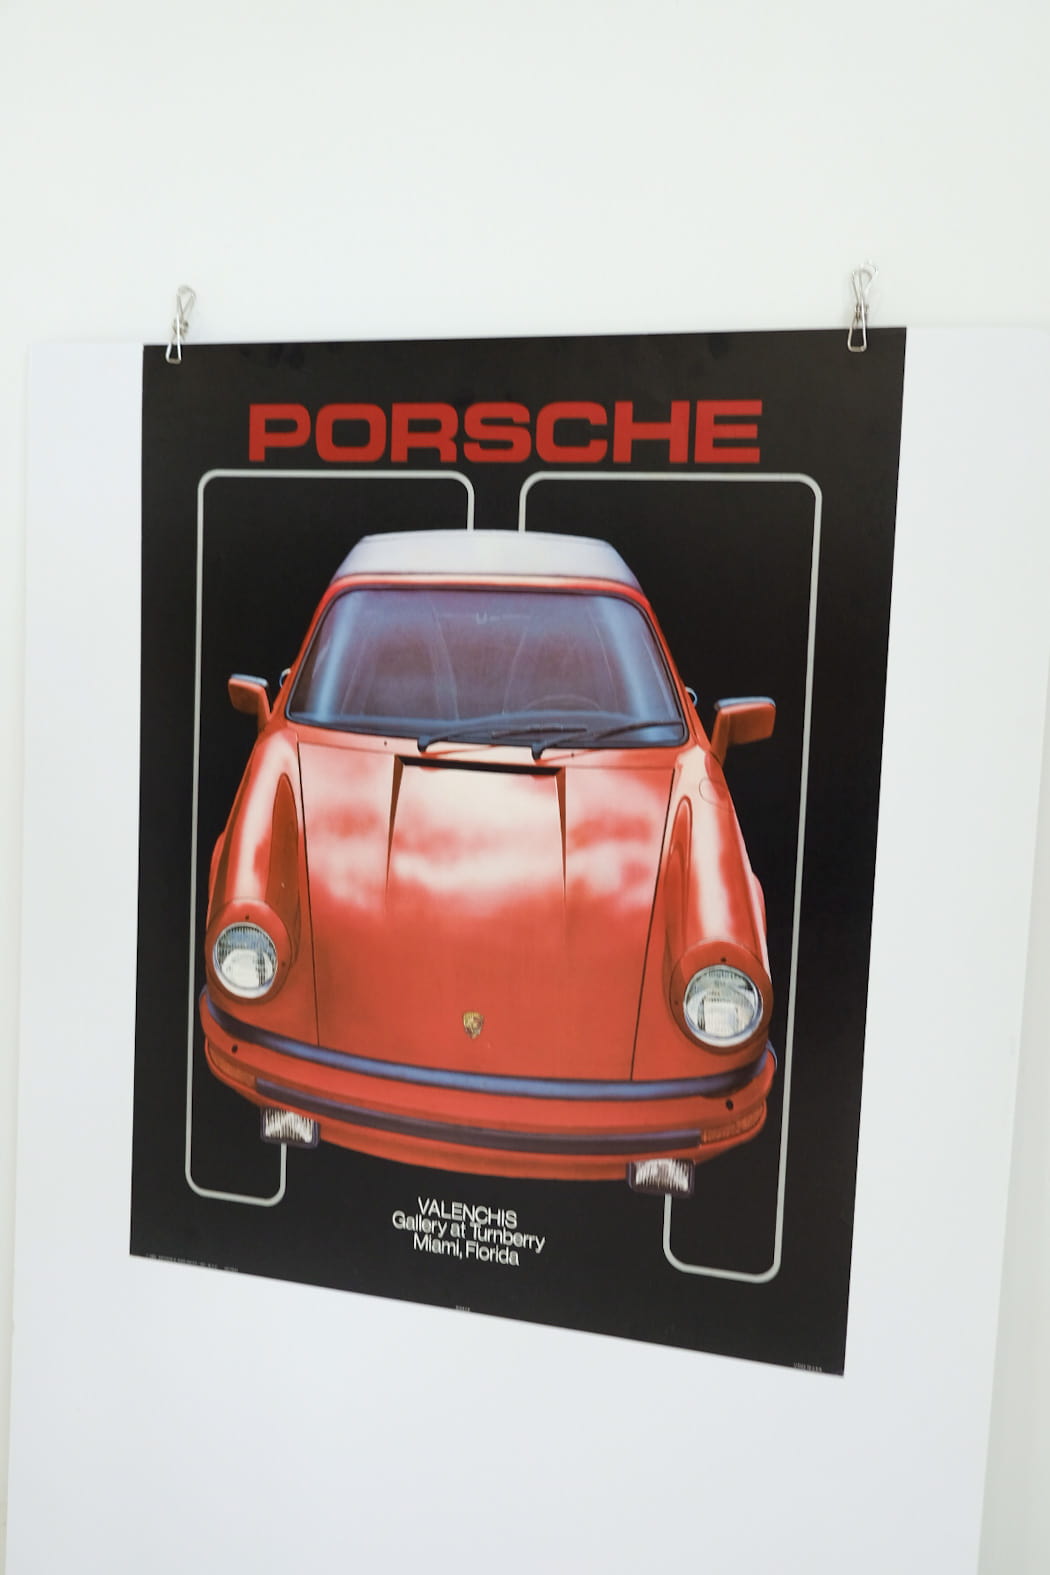 1983 Porsche Valenchis